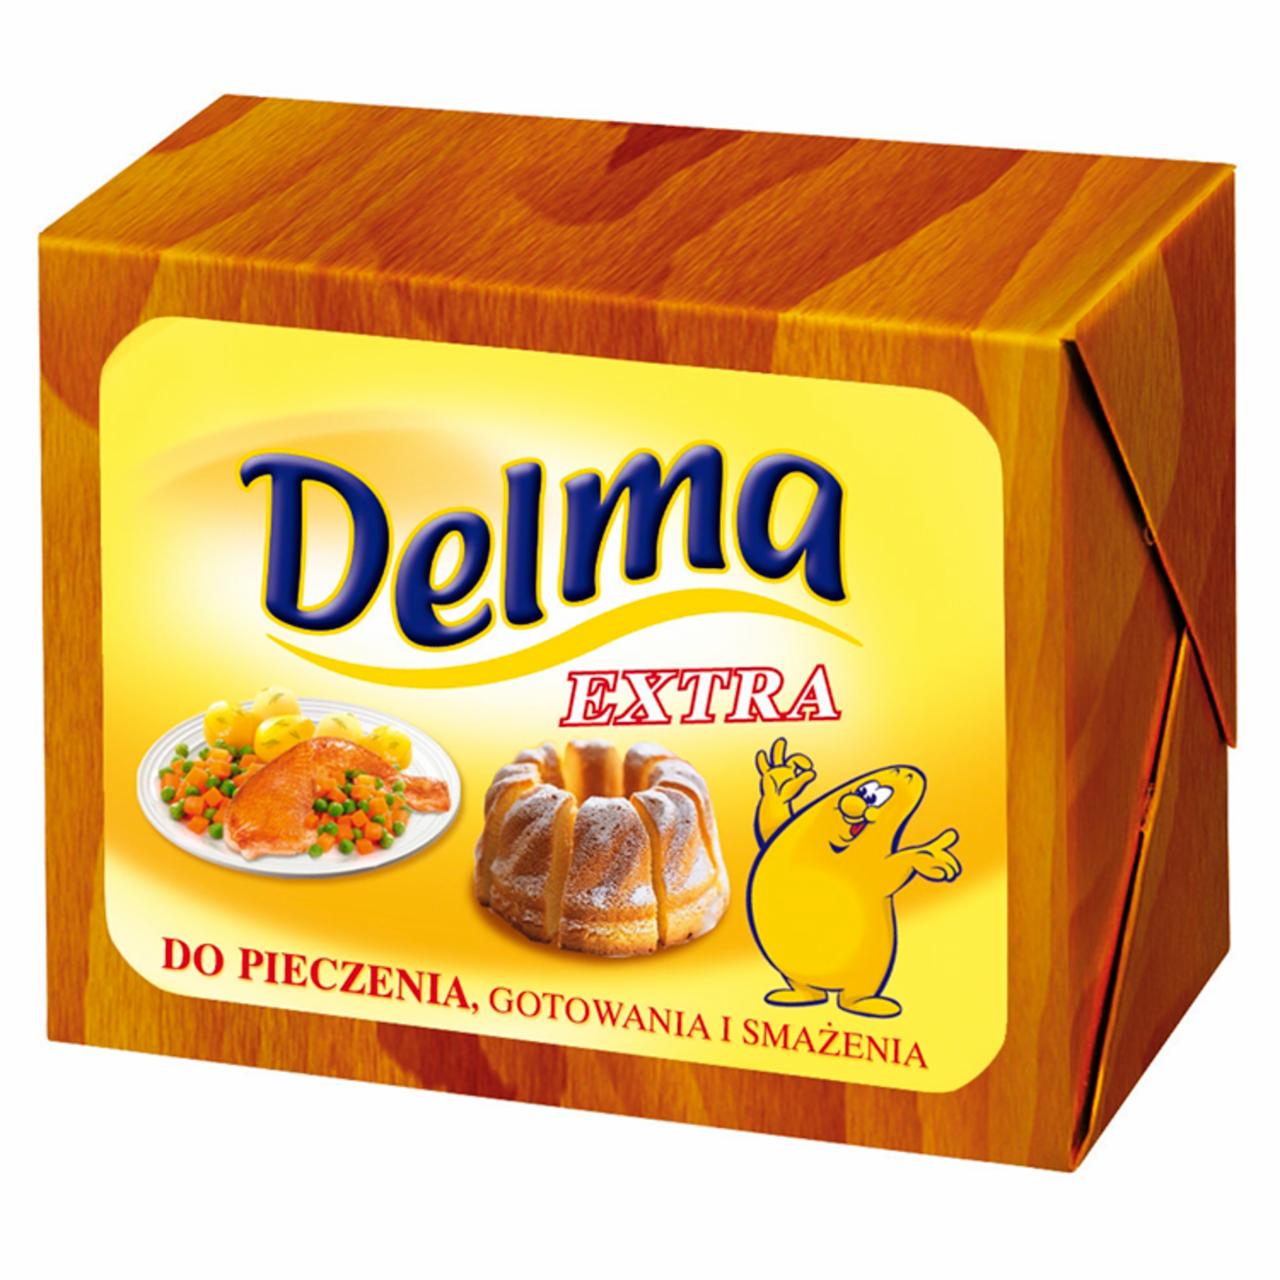 Zdjęcia - Delma Extra do pieczenia gotowania i smażenia Tłuszcz roślinny 250 g